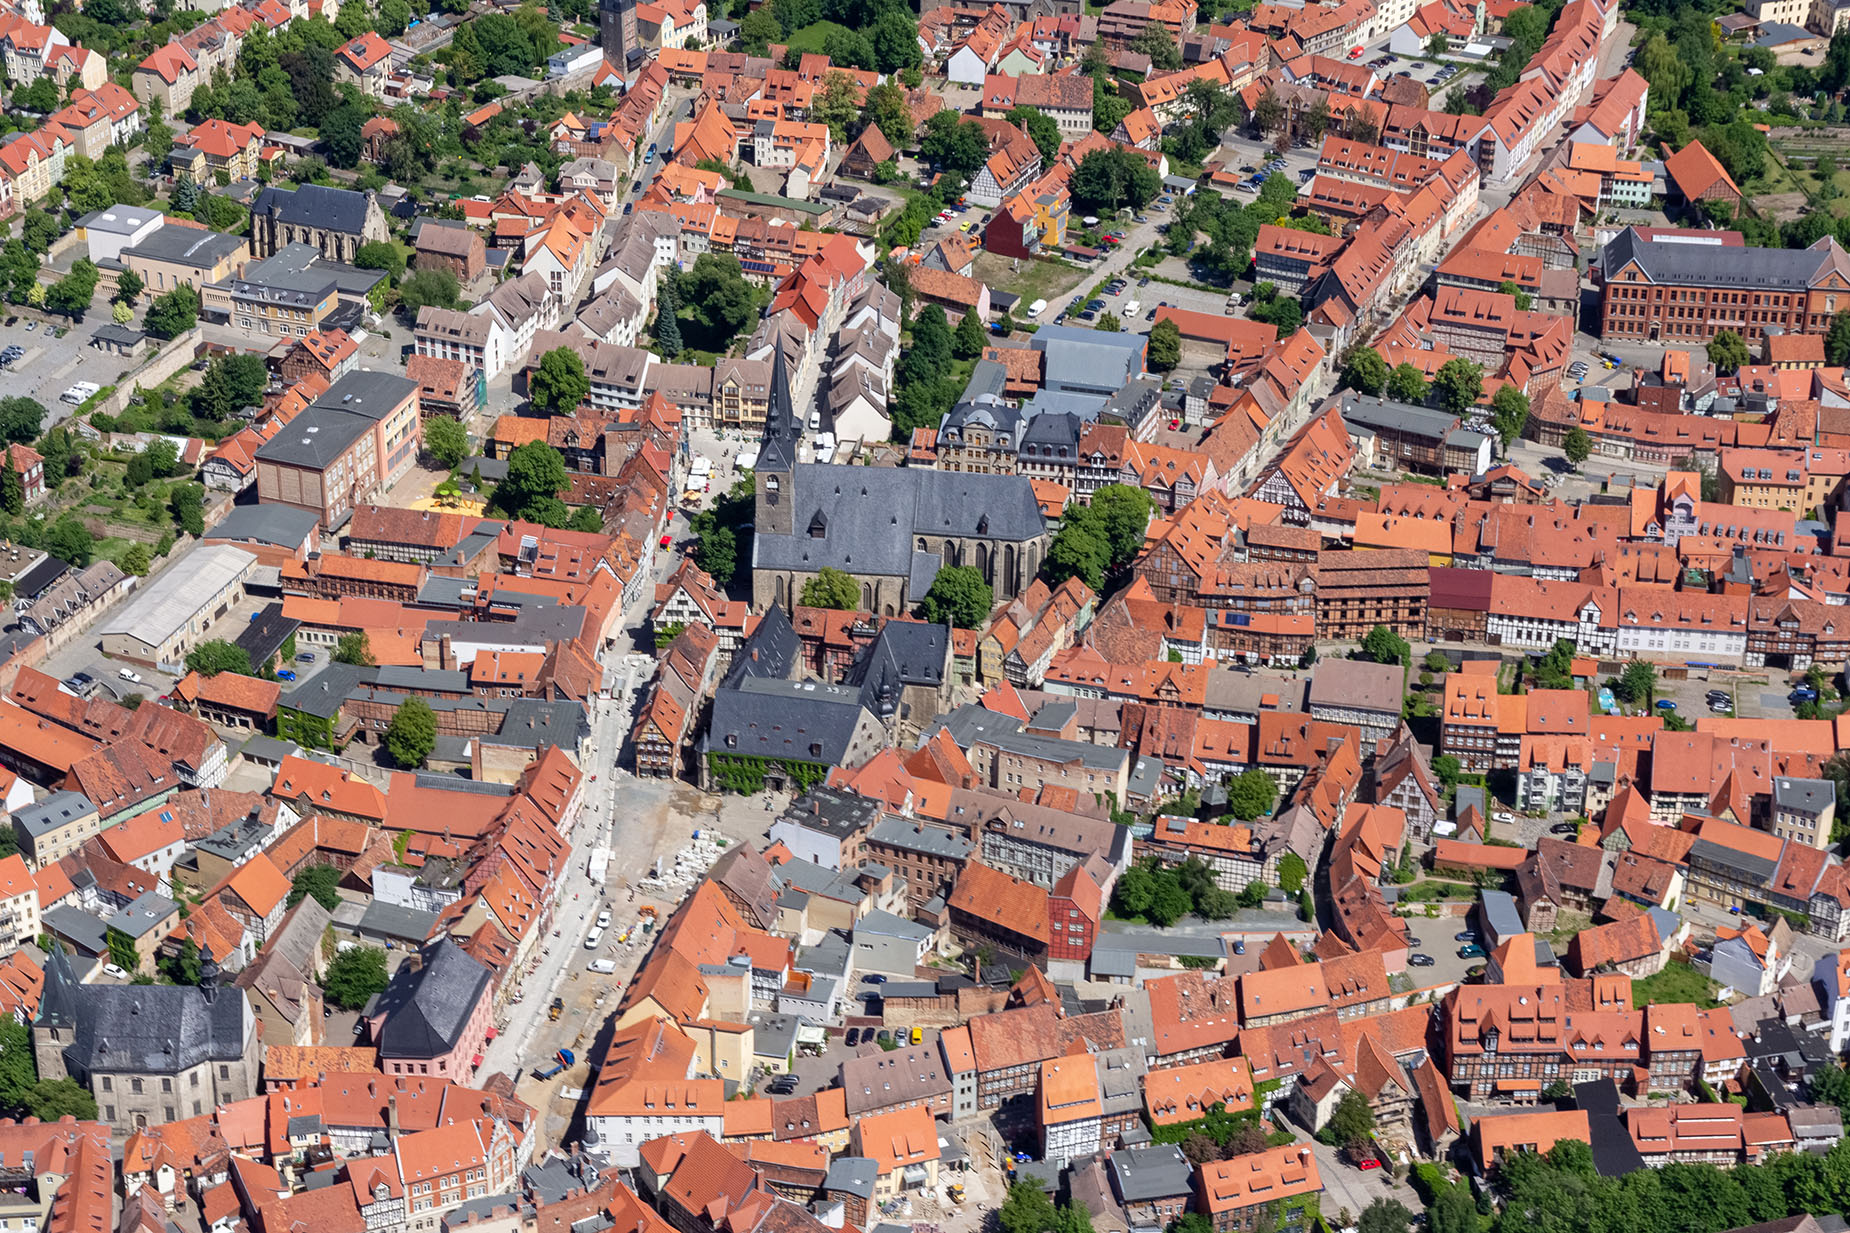 Luftbild Altstadt Quedlinburg